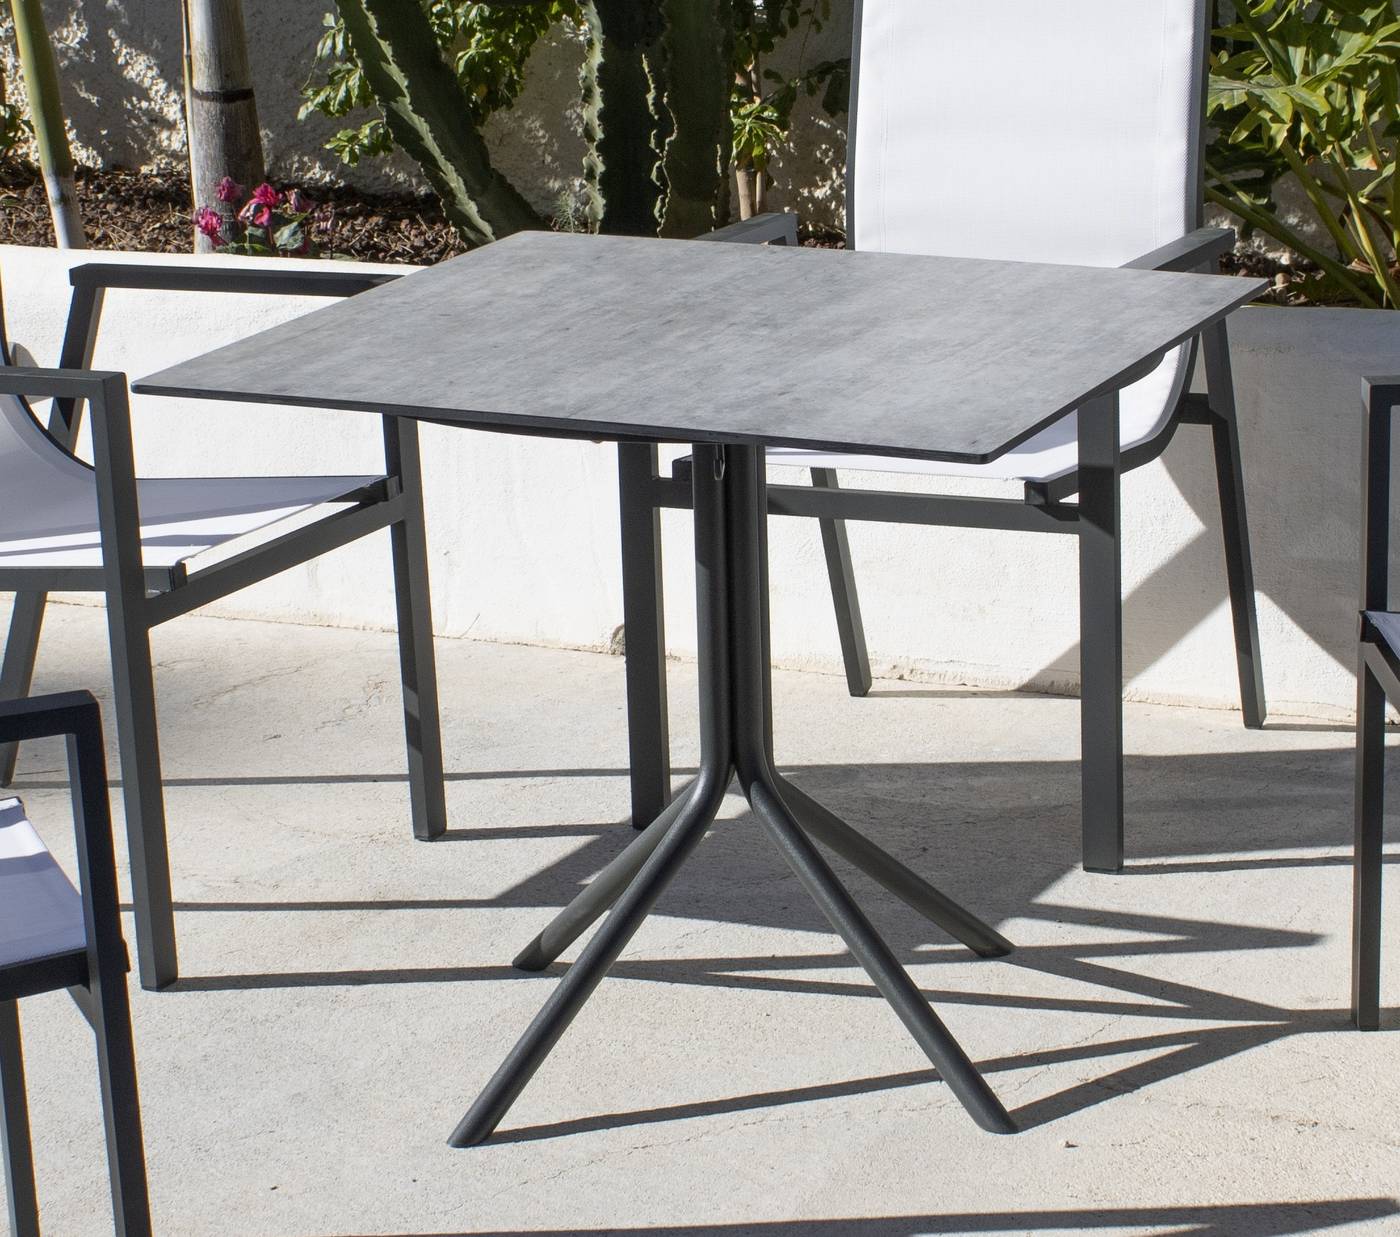 Mesa cuadrada para jardín o terraza, con patas ensambladas de aluminio y tablero HPL de 70 cm. Disponible en varios colores.